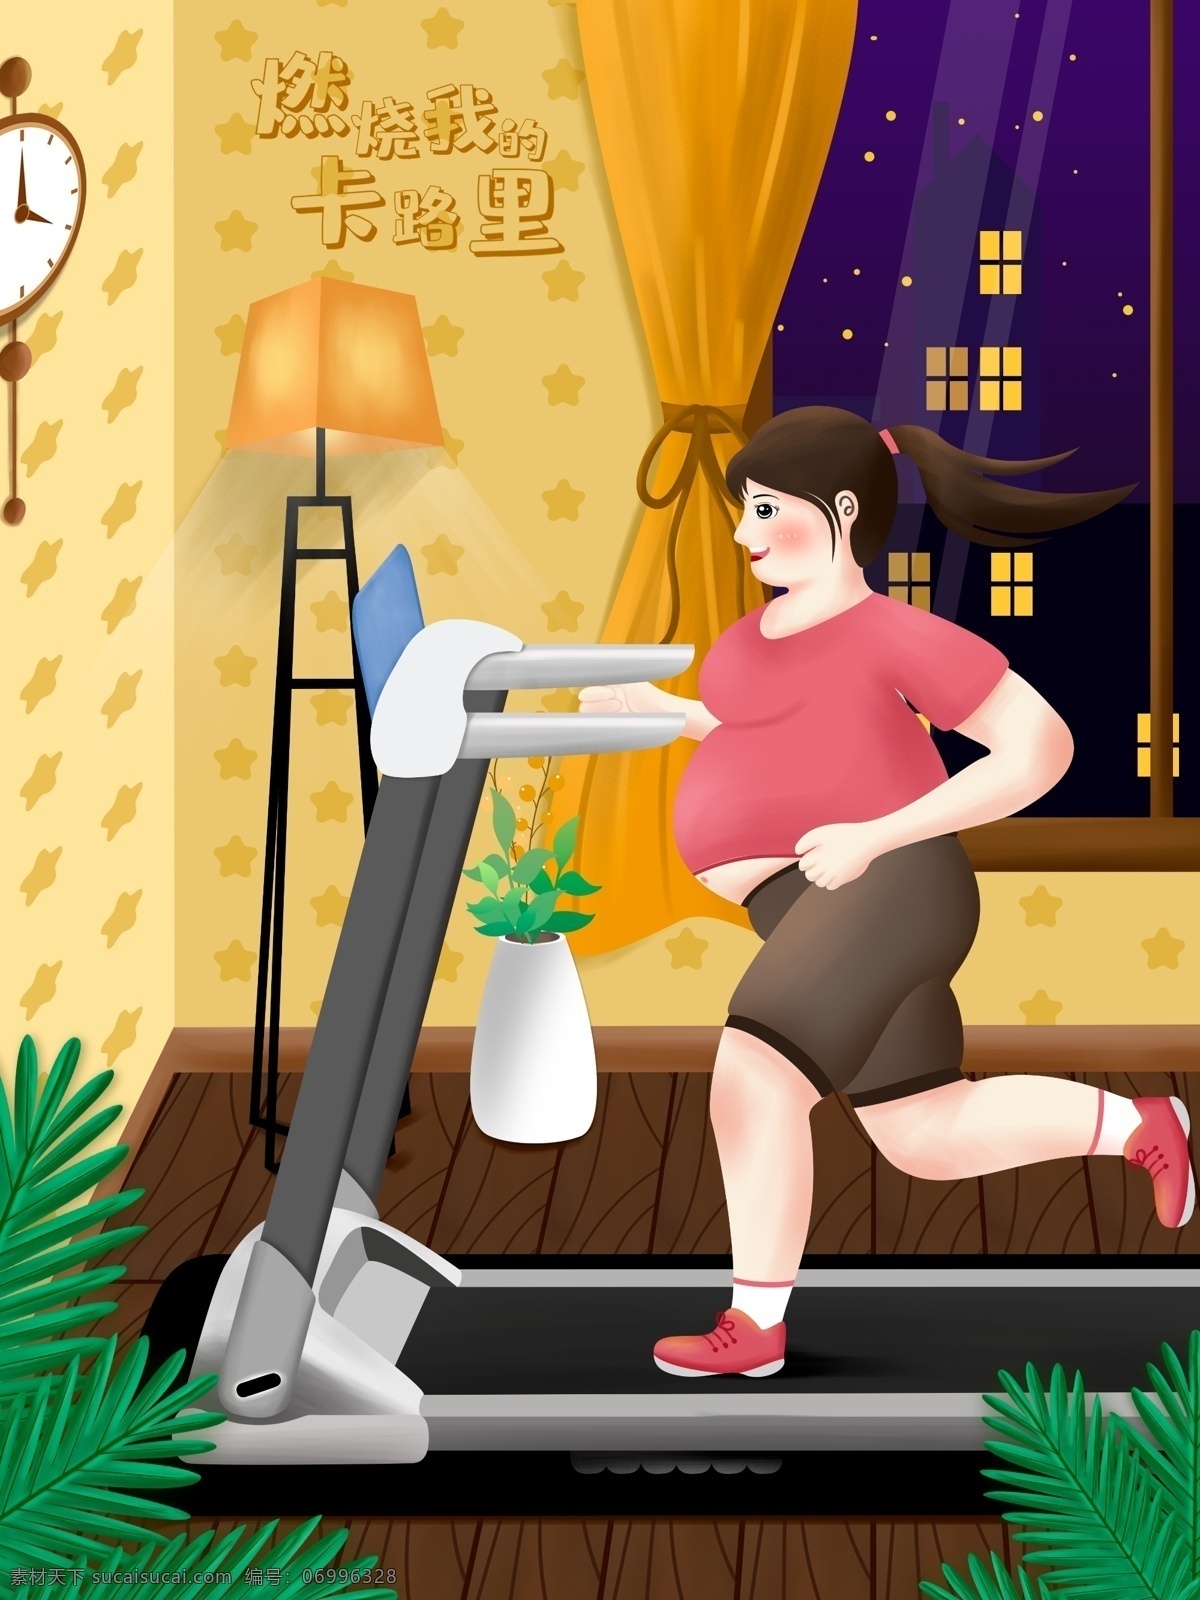 原创 燃烧 卡路里 手绘 健身 场景 插画 减肥 肥宅 跑步 跑步机 灯 夜晚 的卡 路里 脂肪 运动